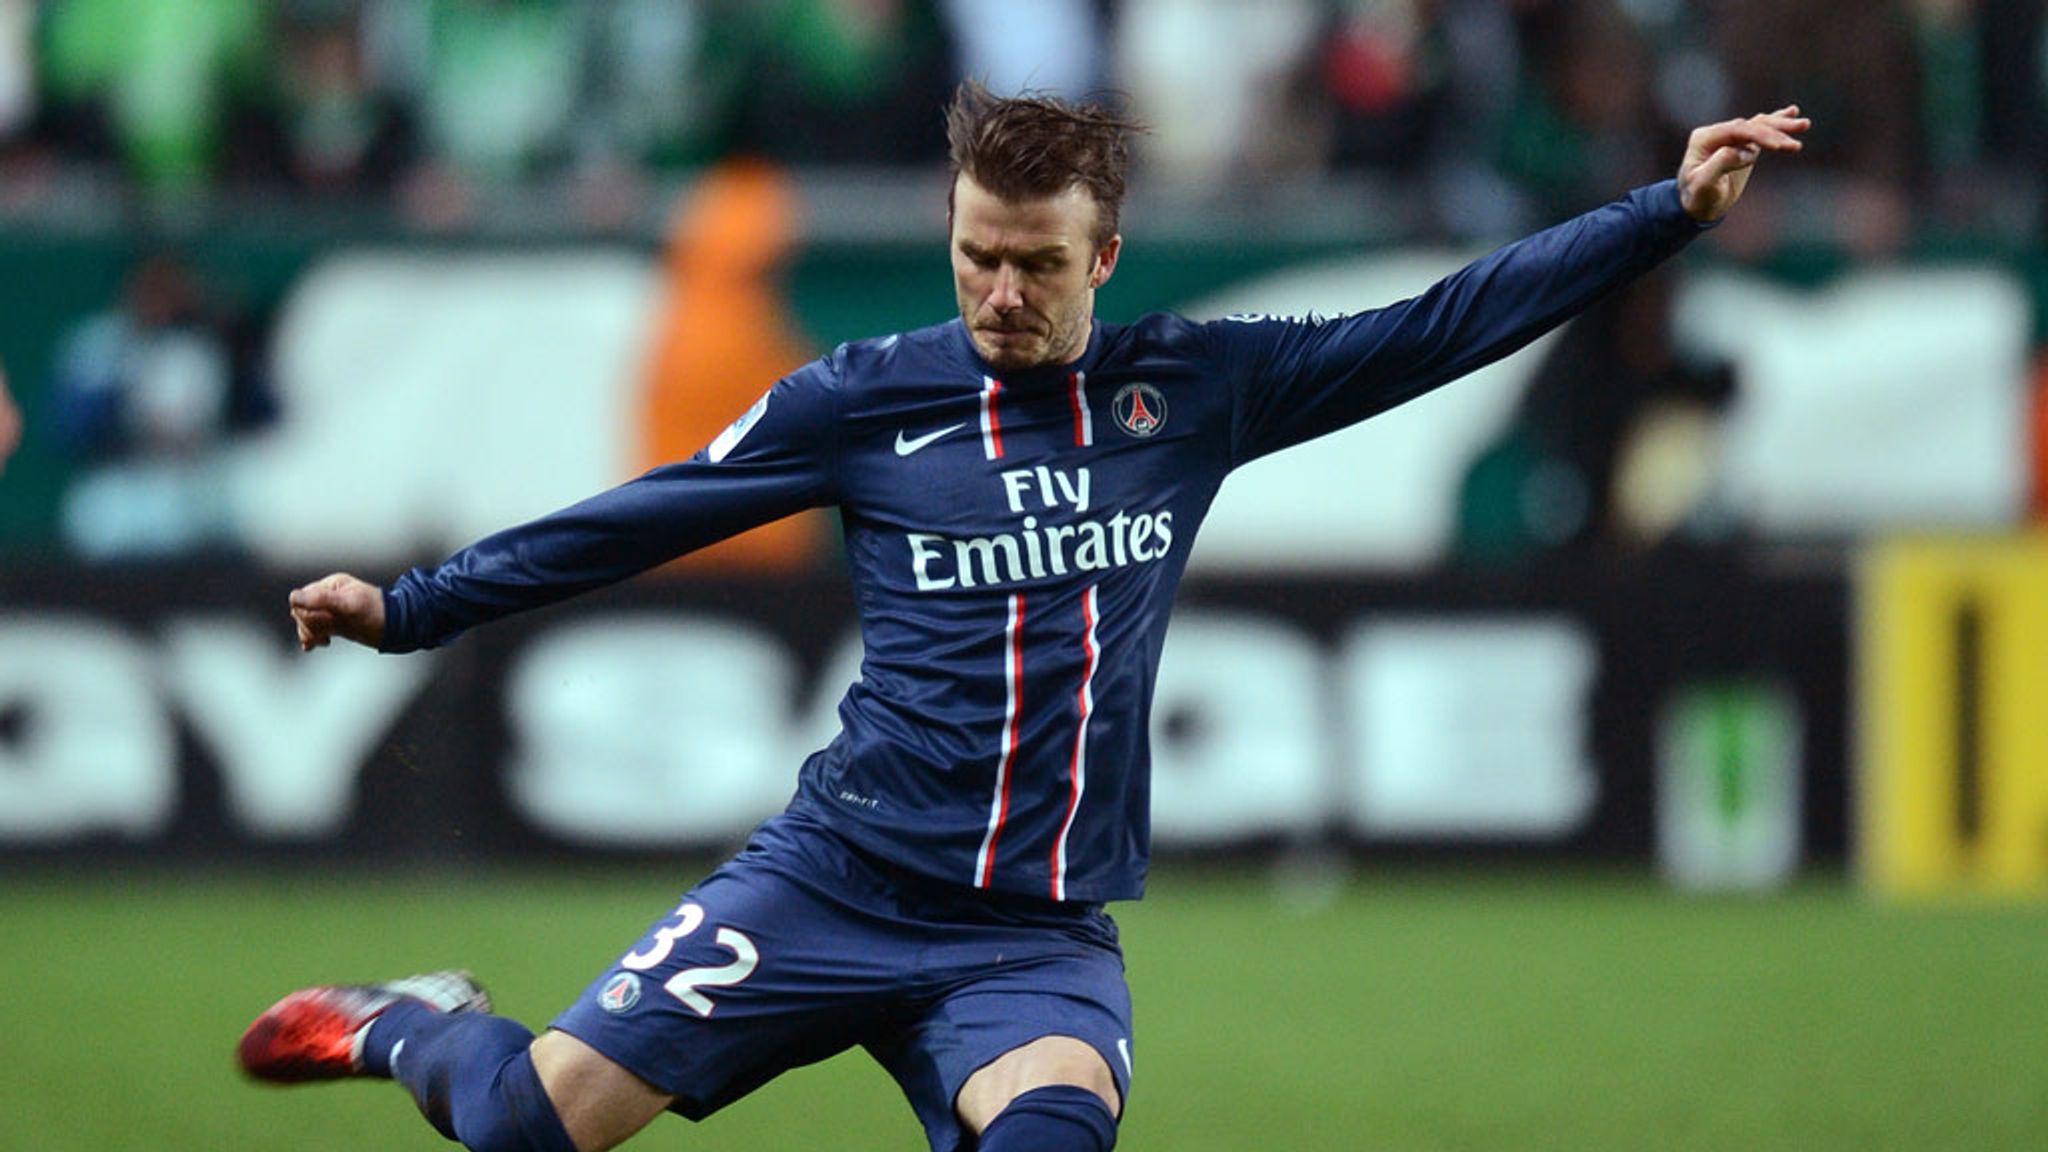 David Beckham to get PSG send off against Brest at the Parc des